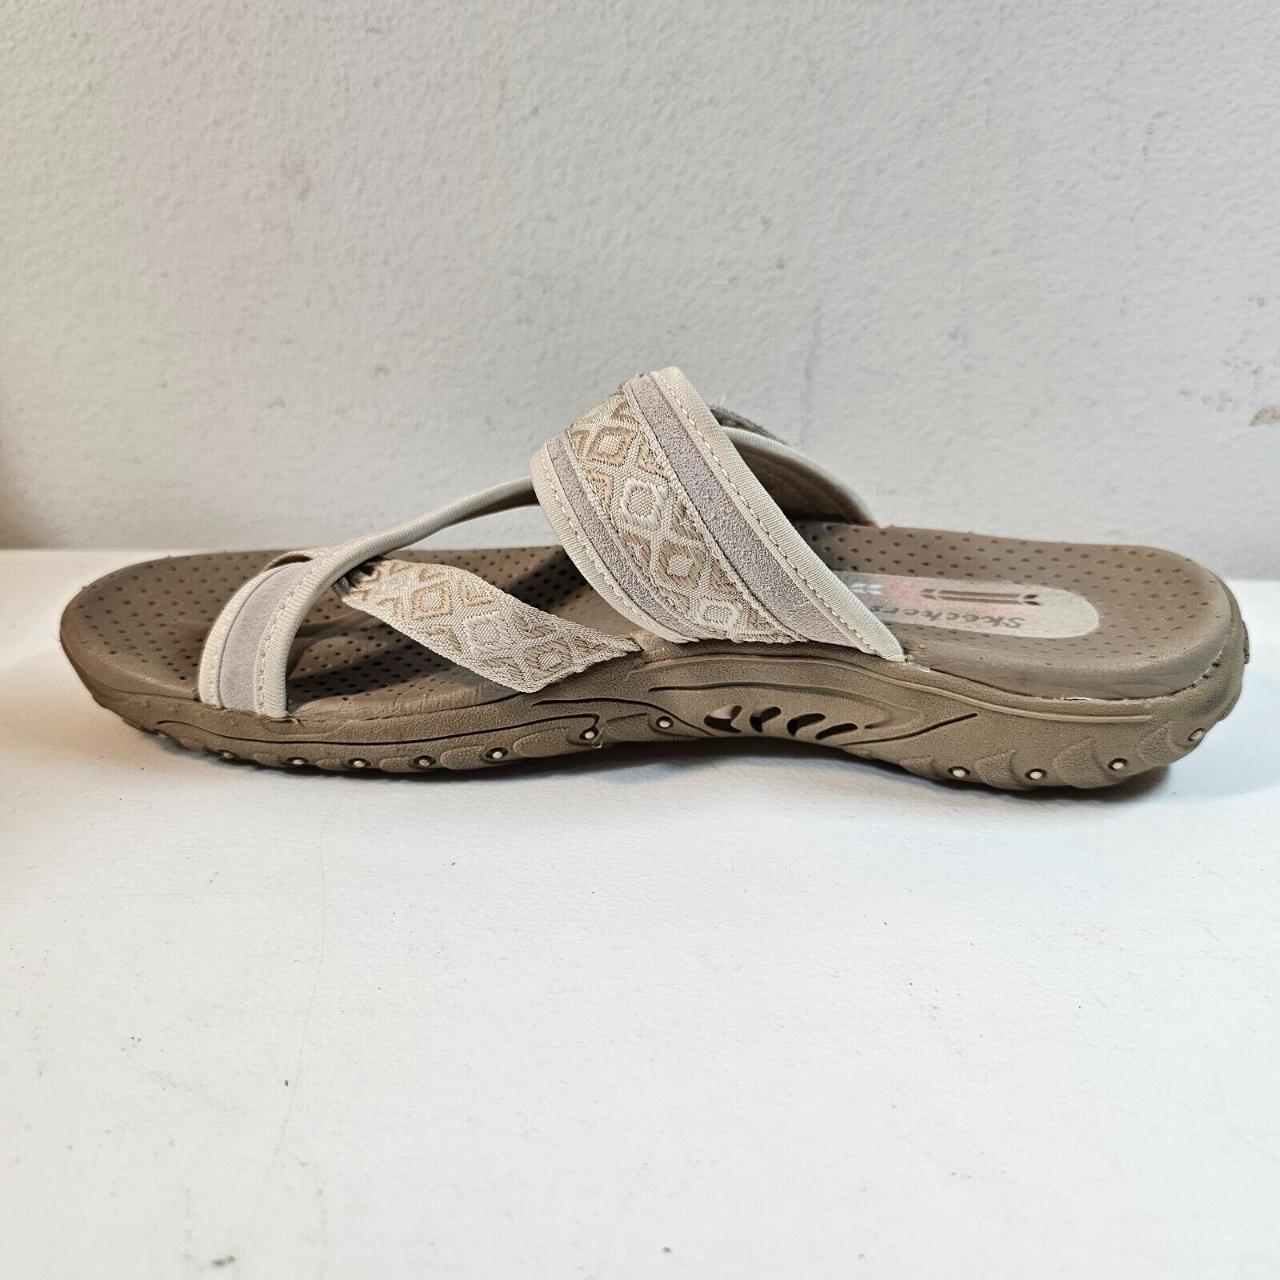 Skechers Reggae Toe Wrap Sandals - Women's US Size 8... - Depop